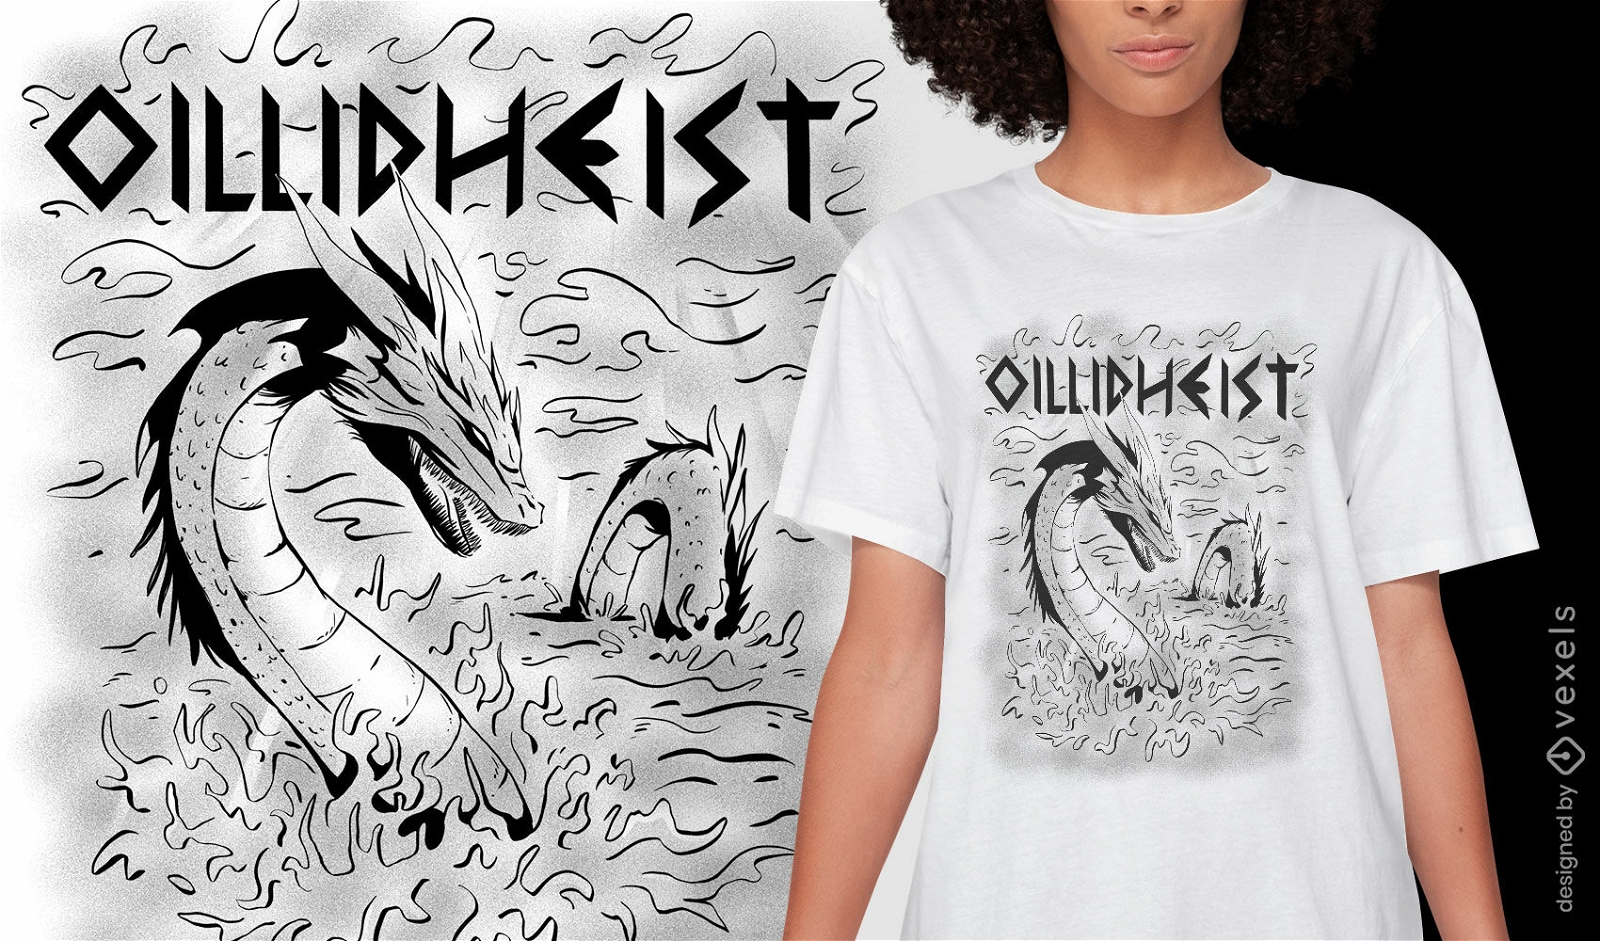 Keltisches Folklorekreatur-T-Shirt-Design